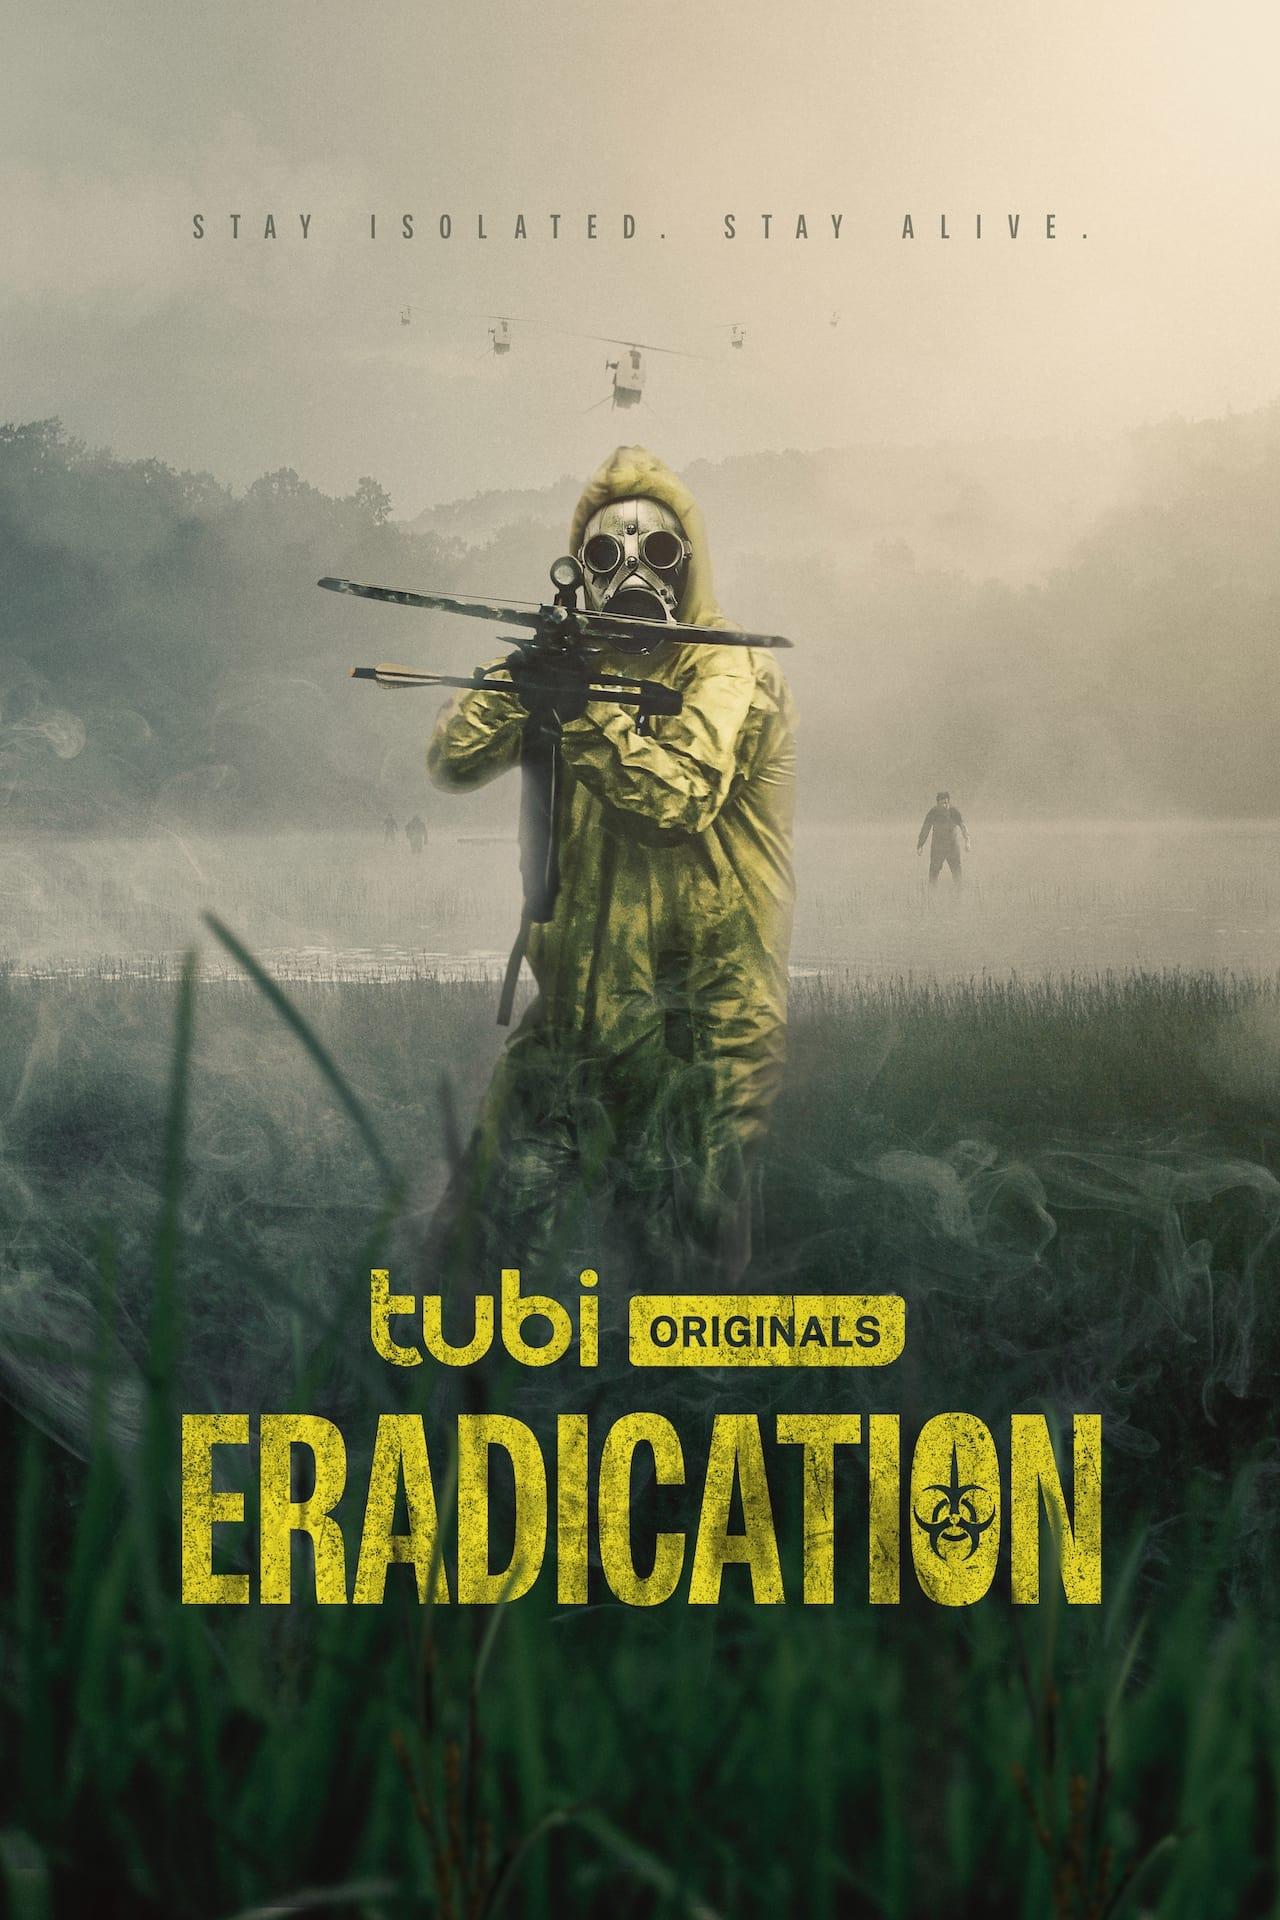 Eradication poster